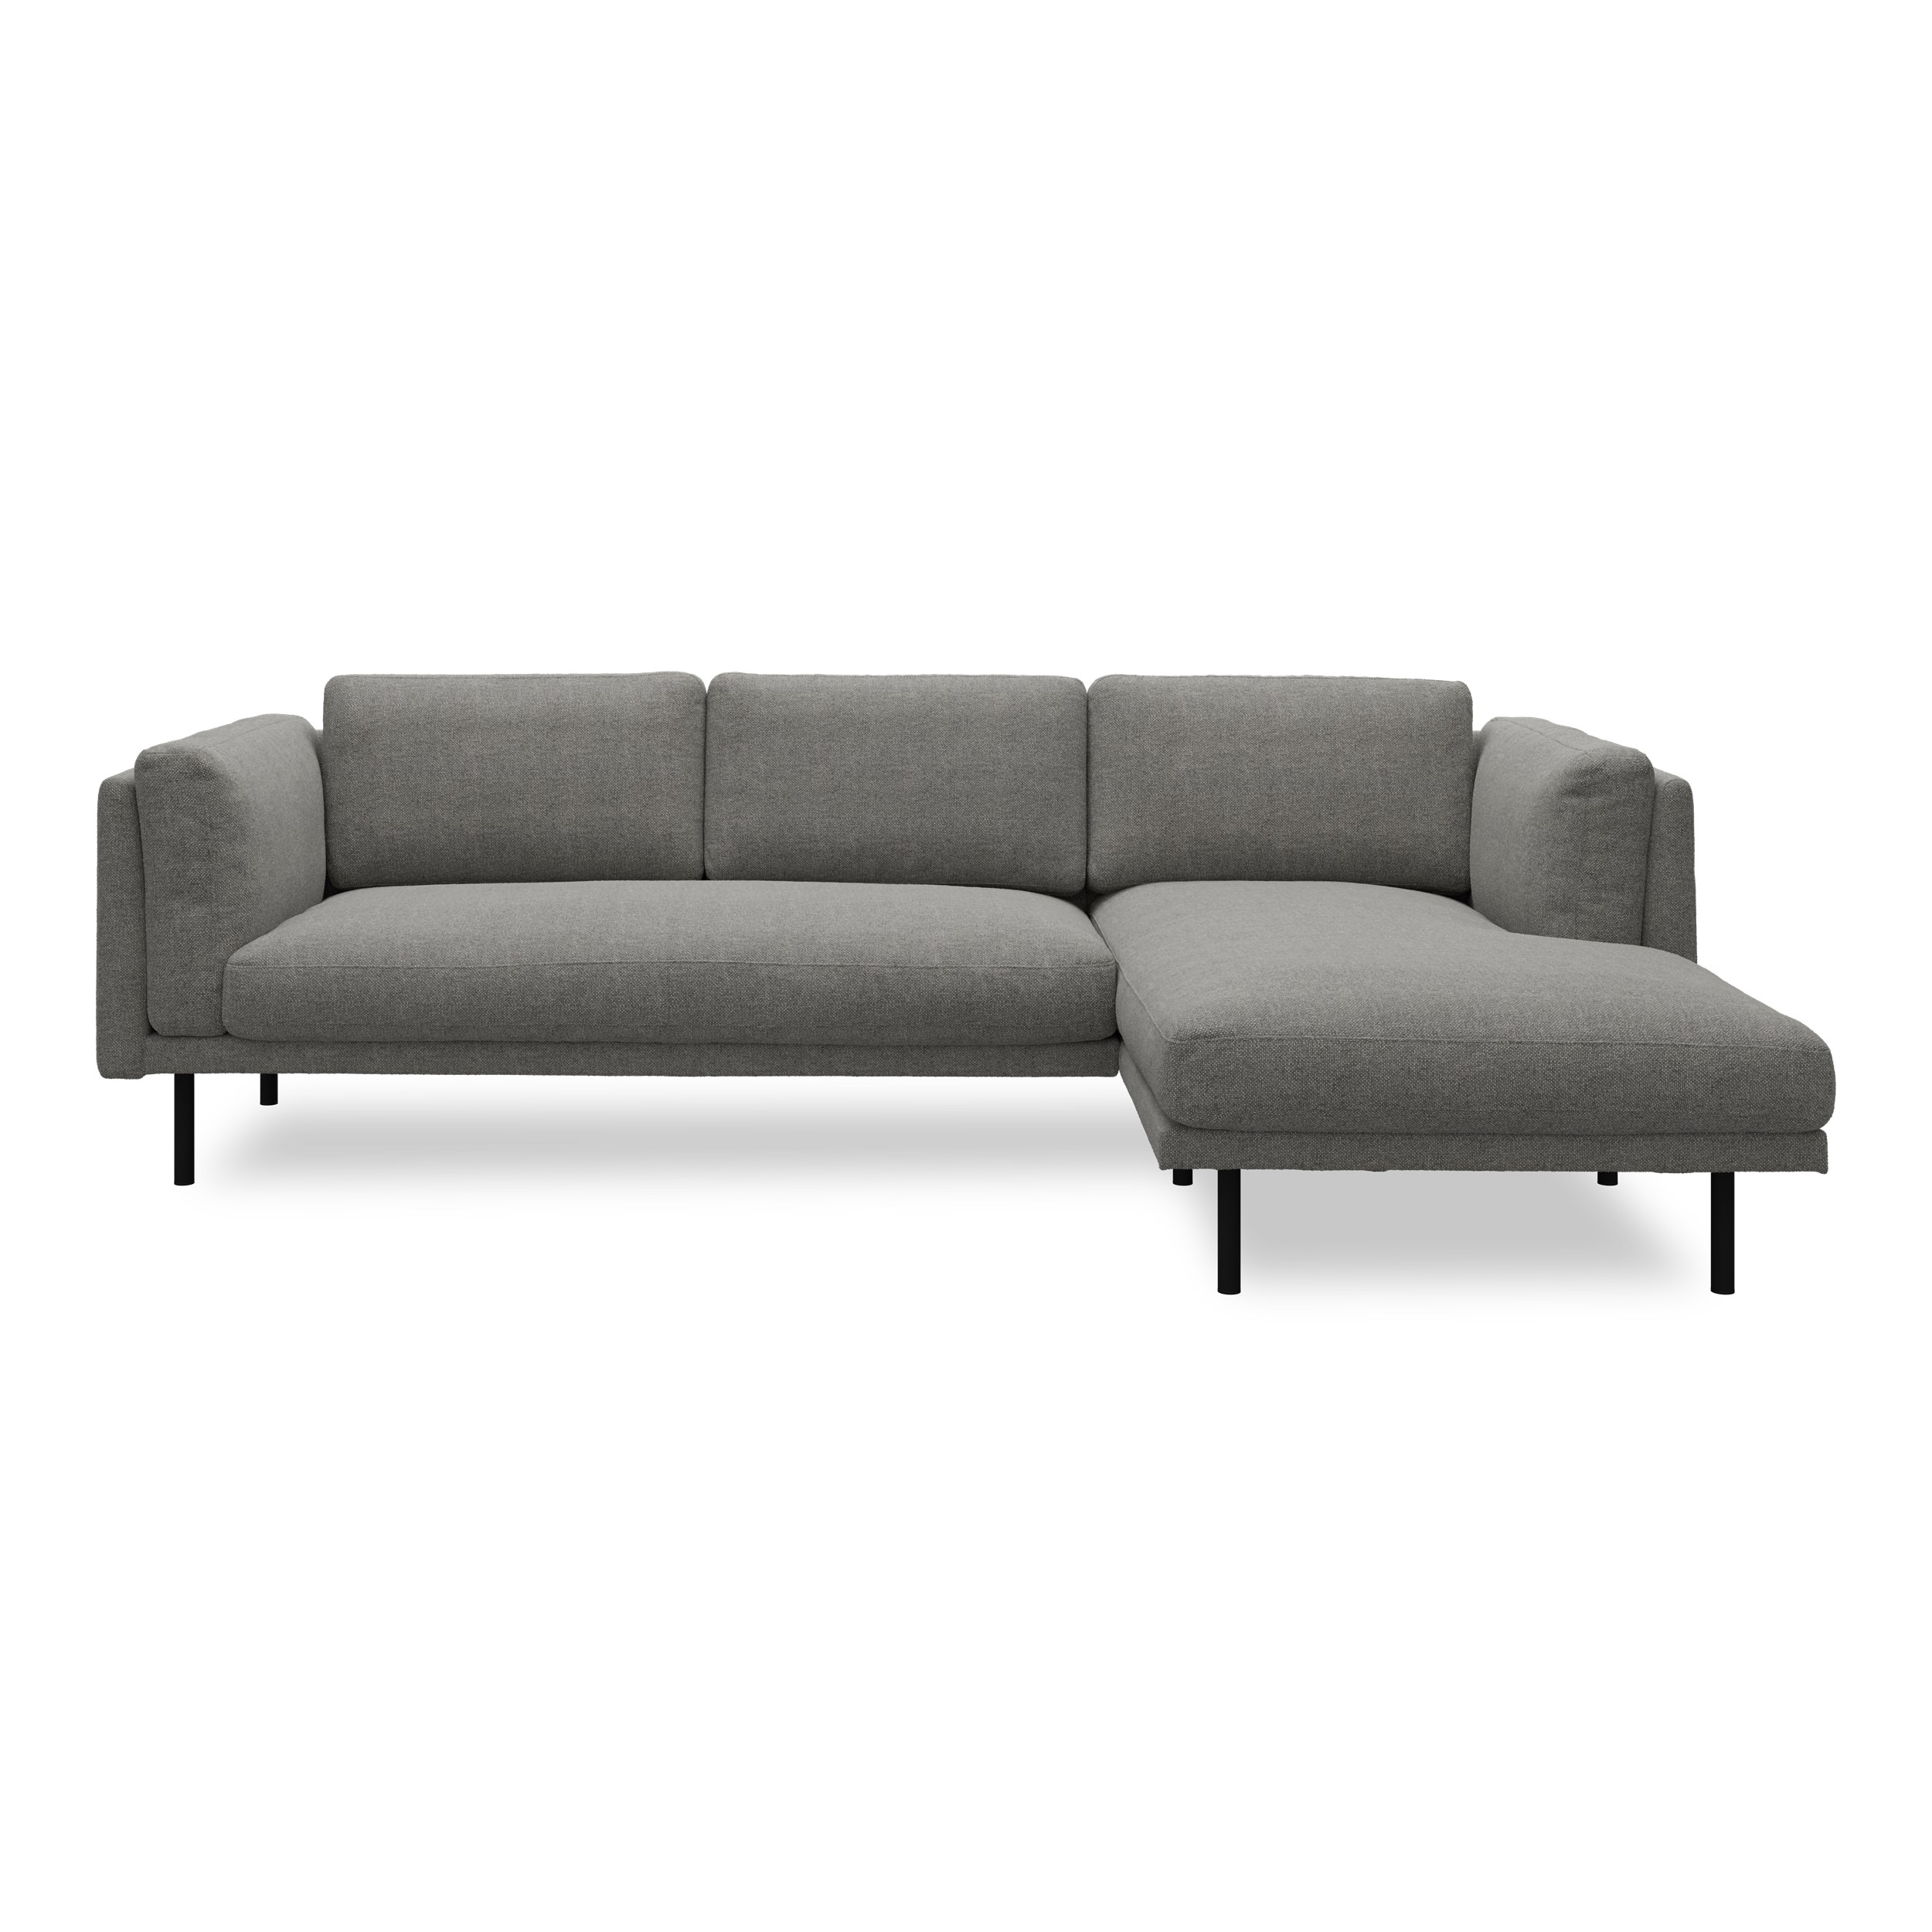 Nebel högervänd soffa med schäslong - Rate 68 Dark grey textil och svart pulverlackerad metall